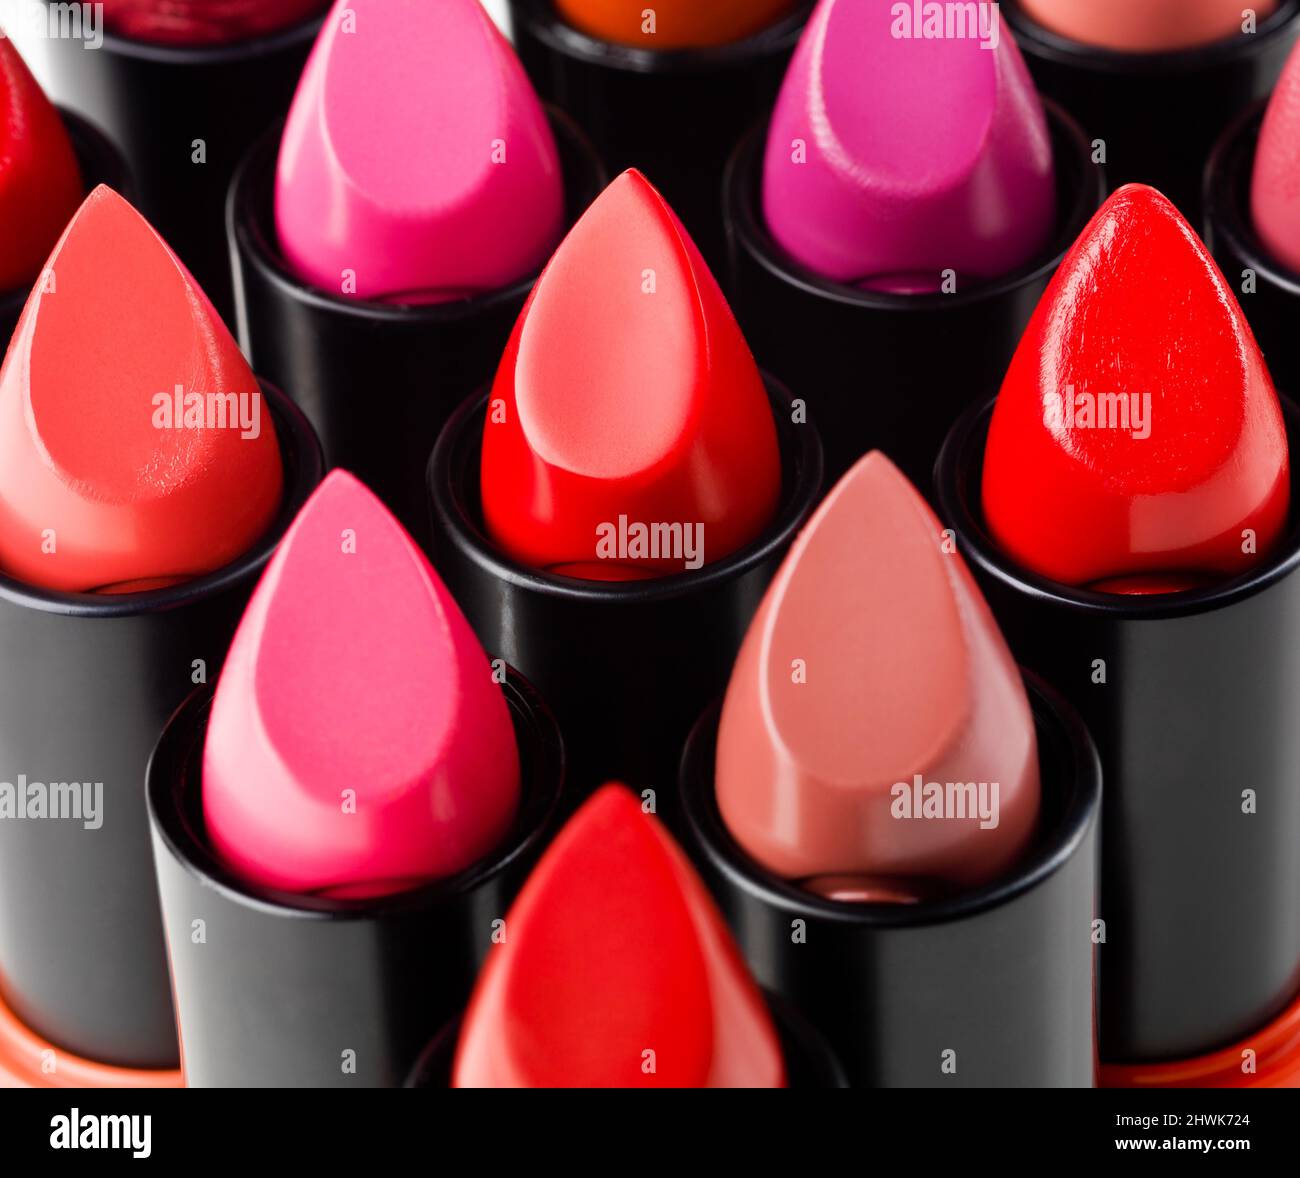 Liebe deine Lippen. Studioaufnahme eines farbenfrohen Lippenstifts. Stockfoto